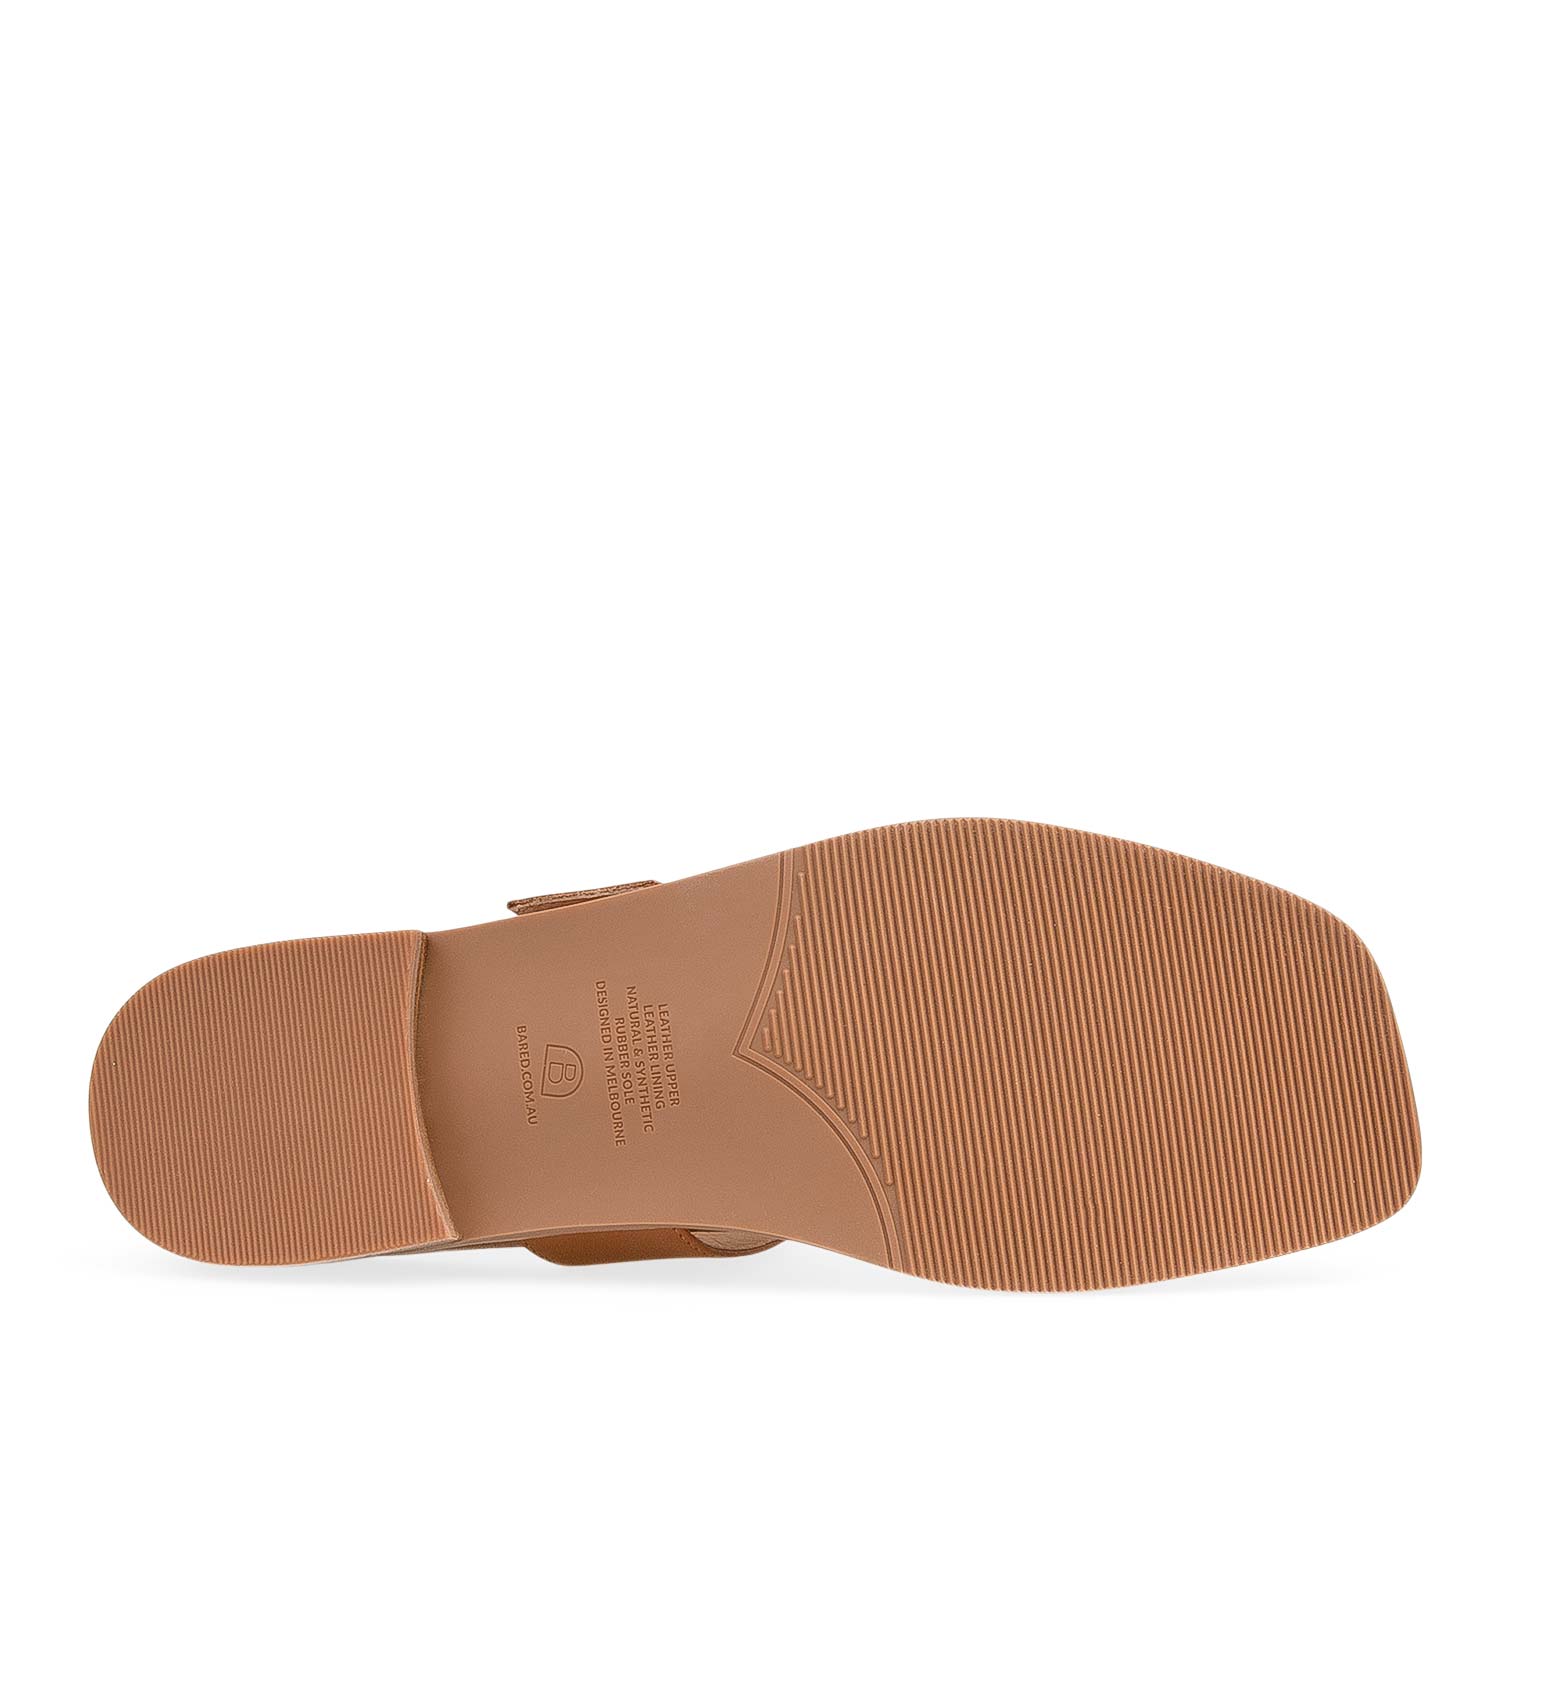 Tit 2 Tan Leather Flat Sandals | Bared Footwear